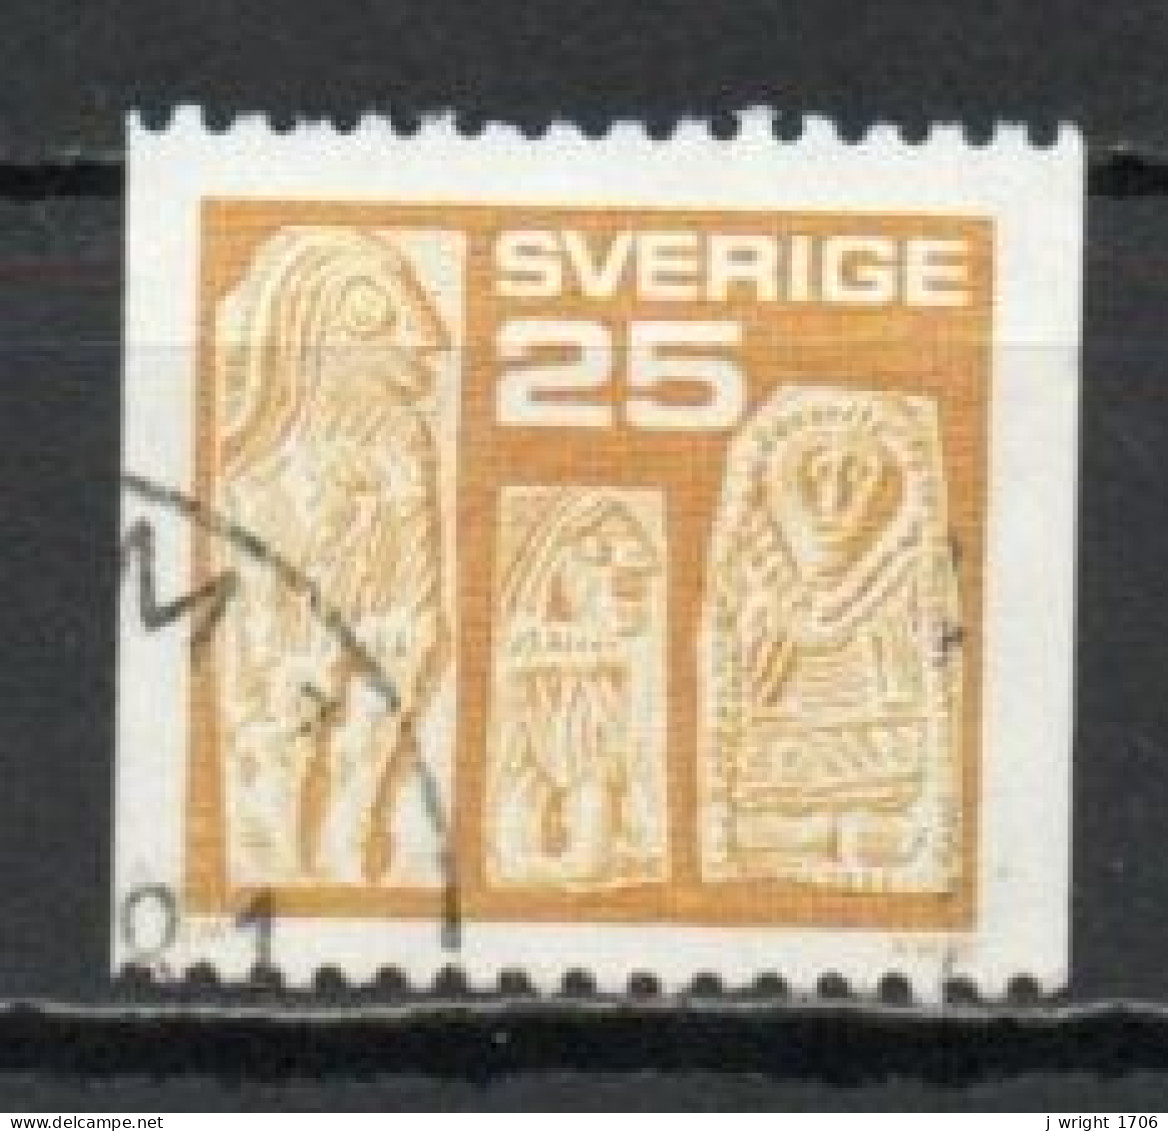 Sweden, 1975, Gold Figures, 25ö, USED - Gebraucht